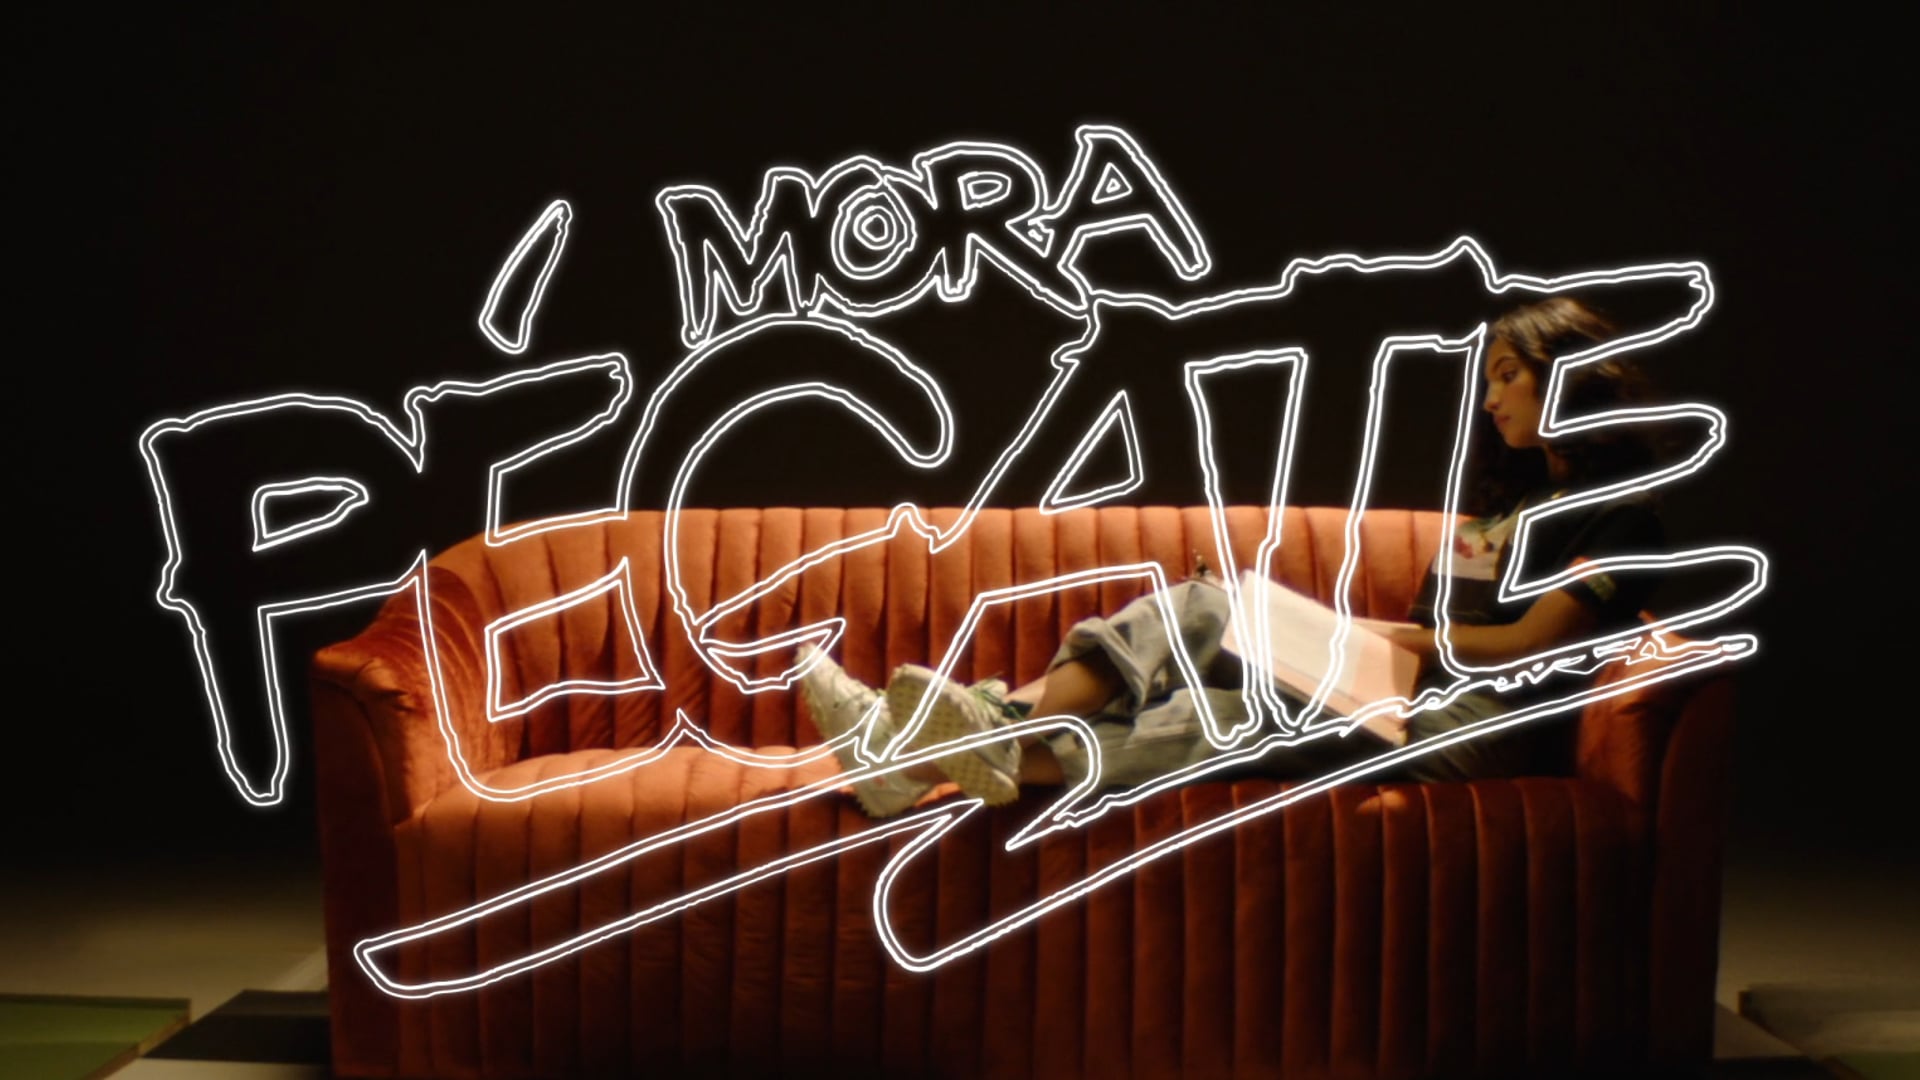 Mora - “Pégate” (Director’s Cut)